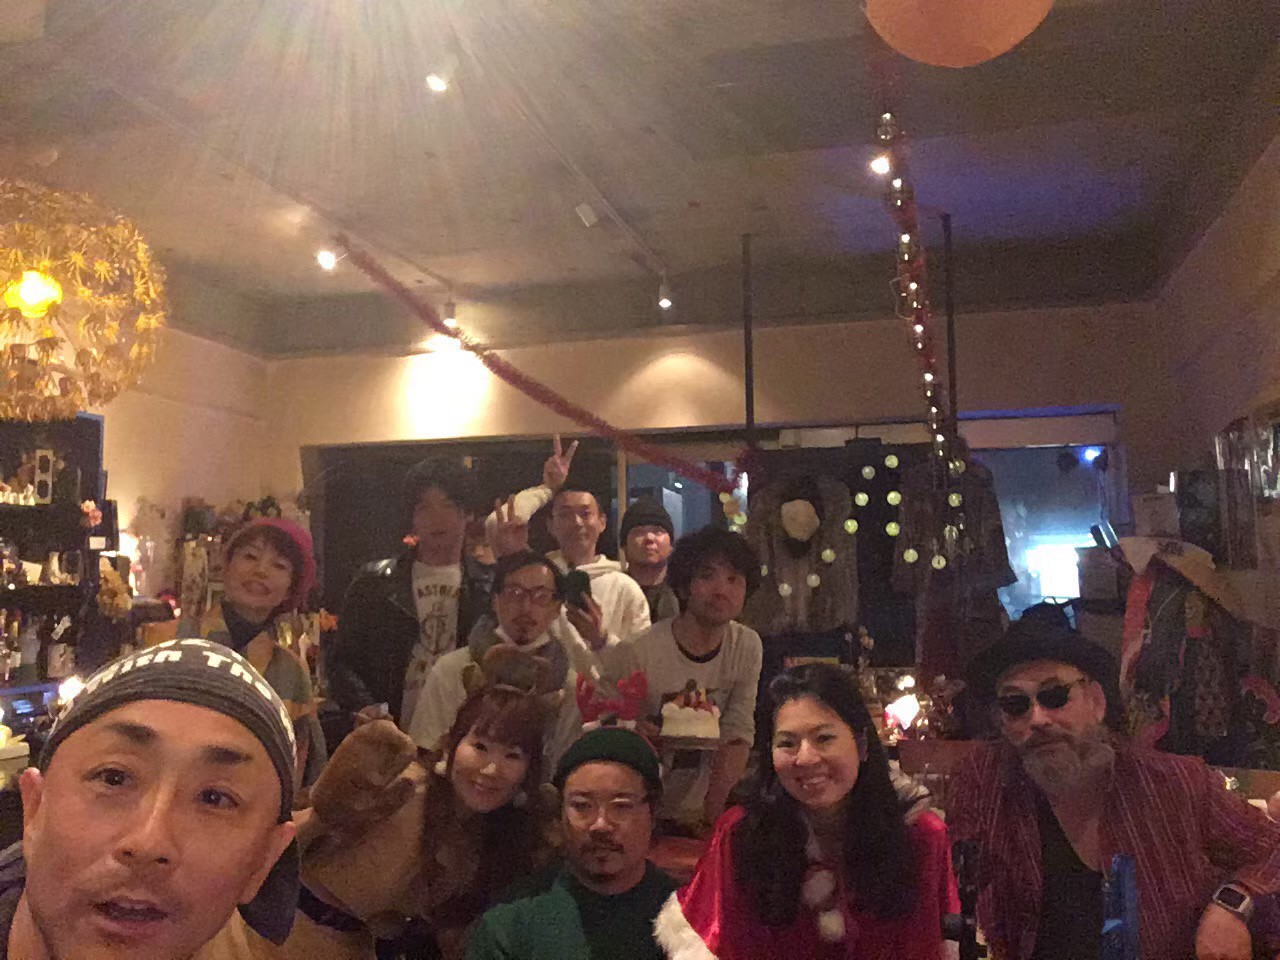 □2019/12/21(土) 名古屋 栄Restaurant Bar SLY_イベント「アコースティックで歌わないと☆vol.108〜face to face♪〜」